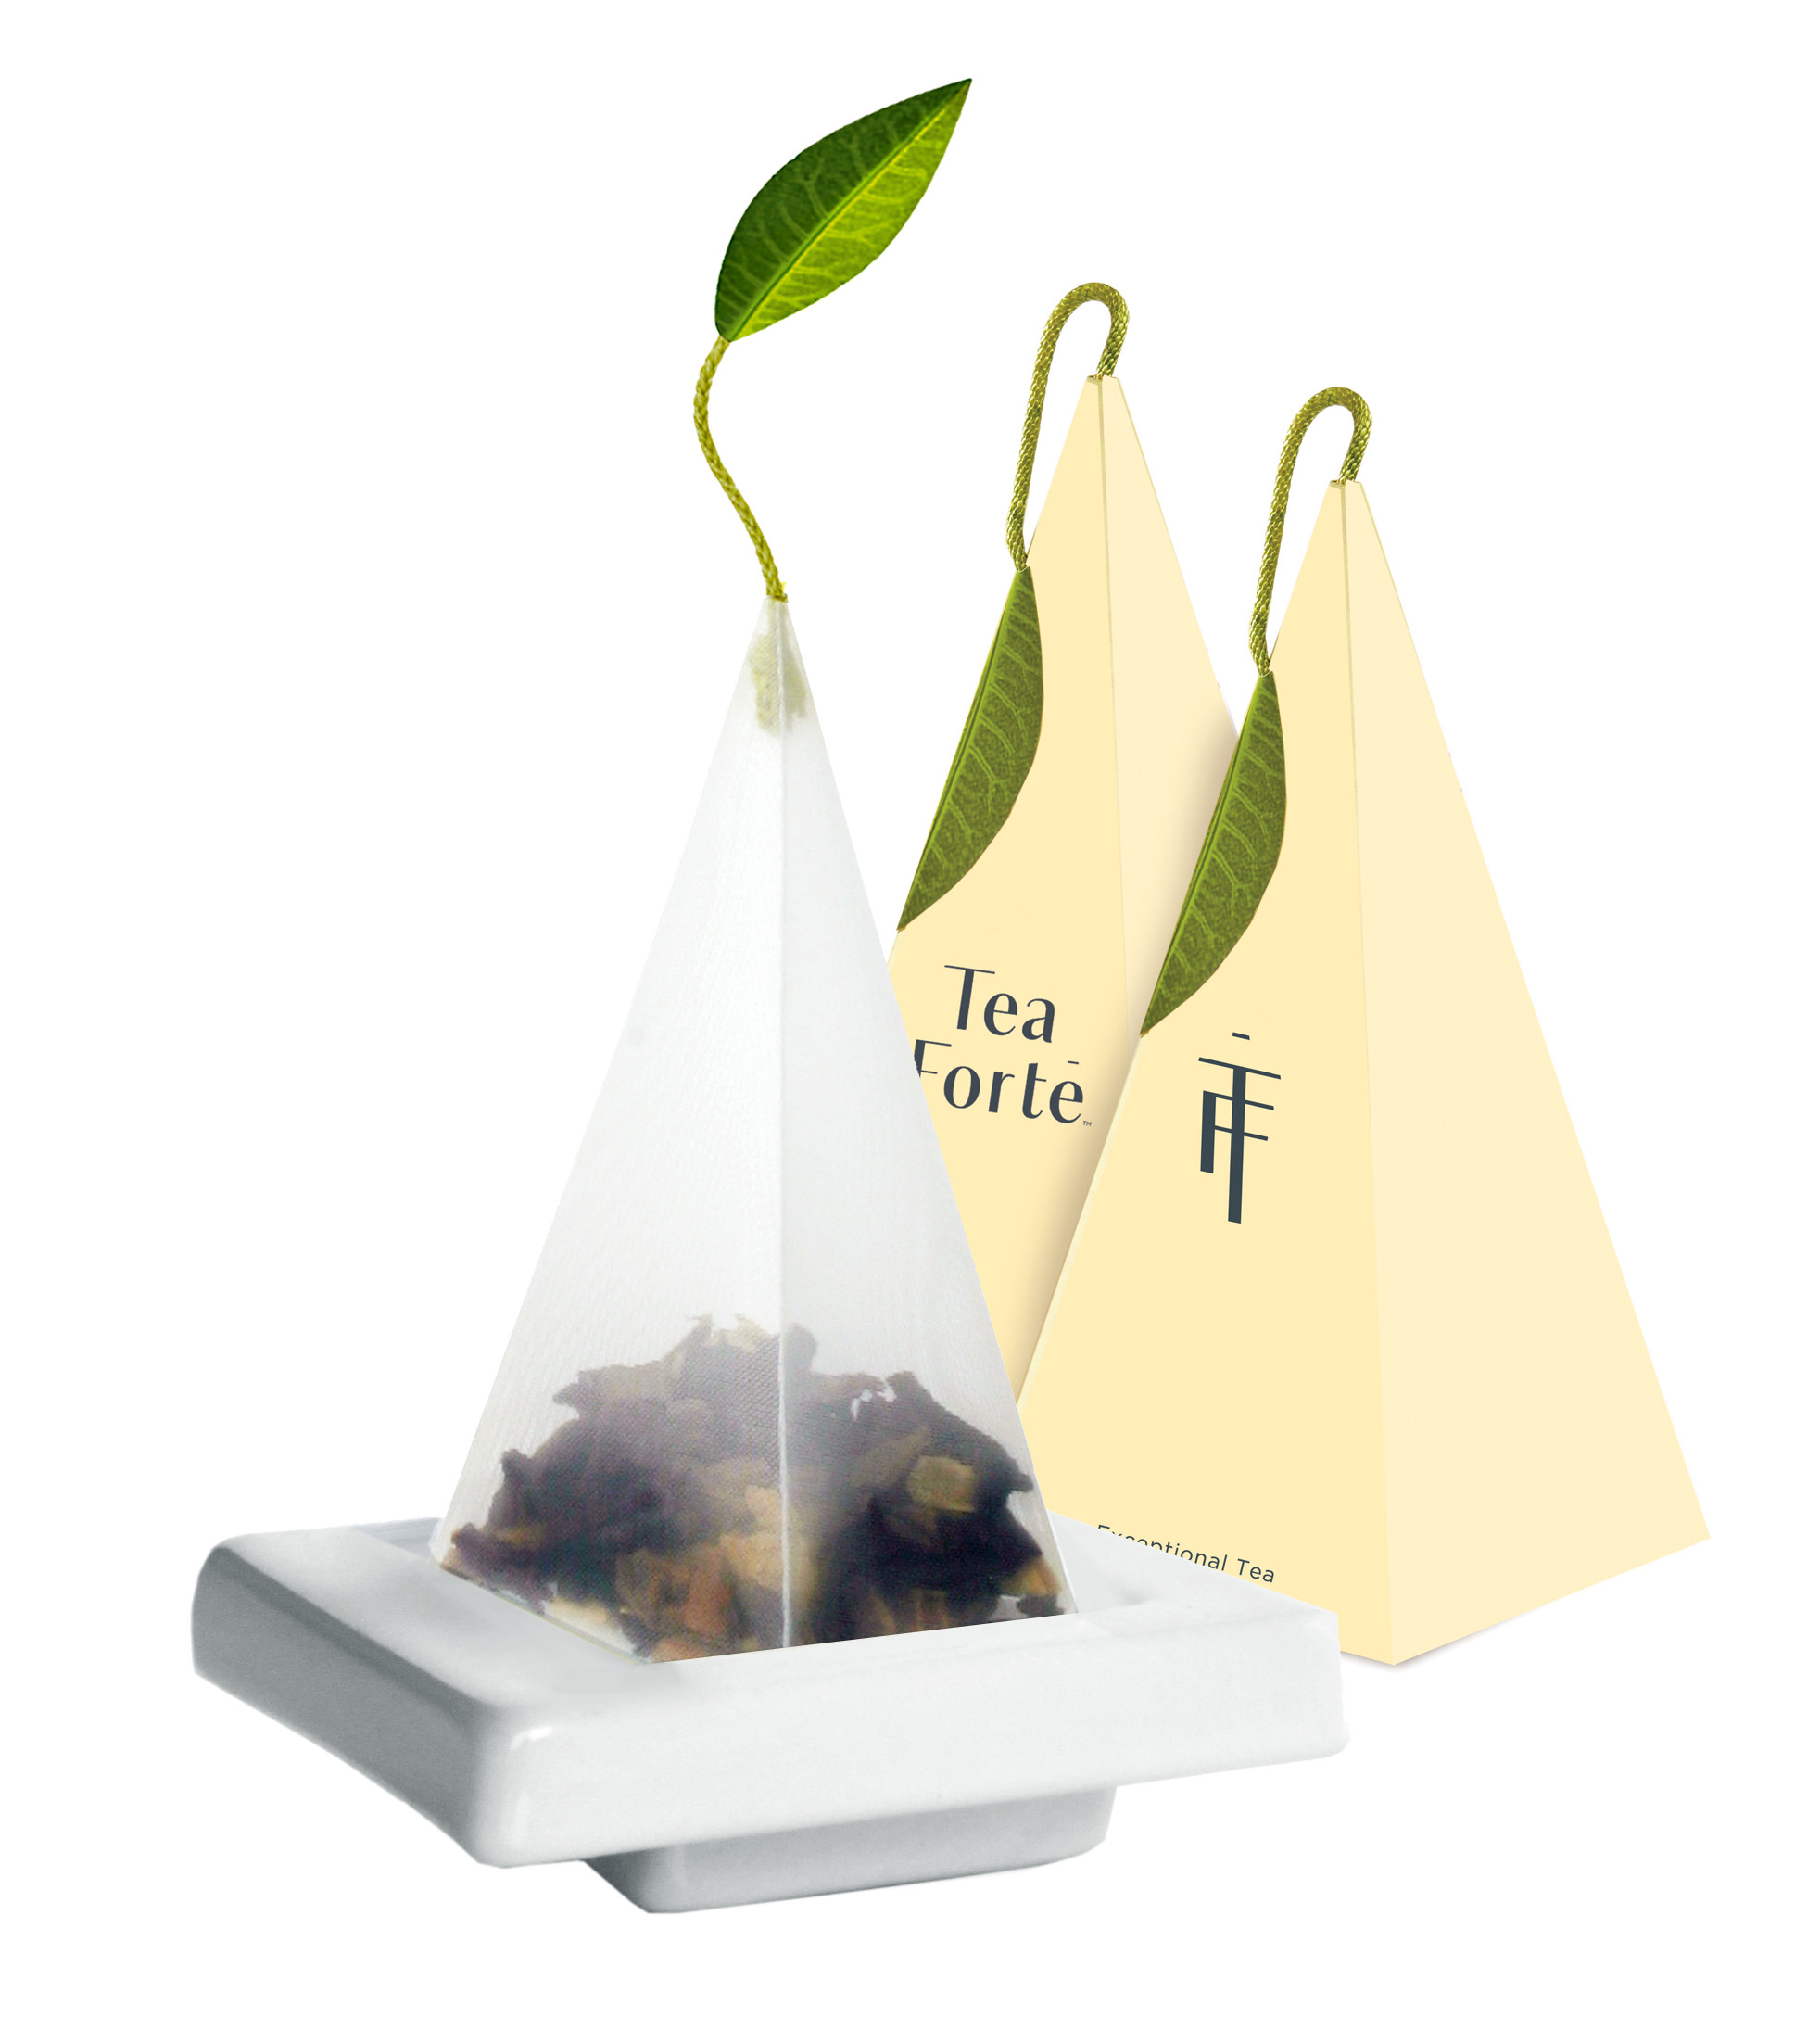 Celestial Seasonings Chamomile Tea Bags 20ct. - Prestogeorge Coffee & Tea